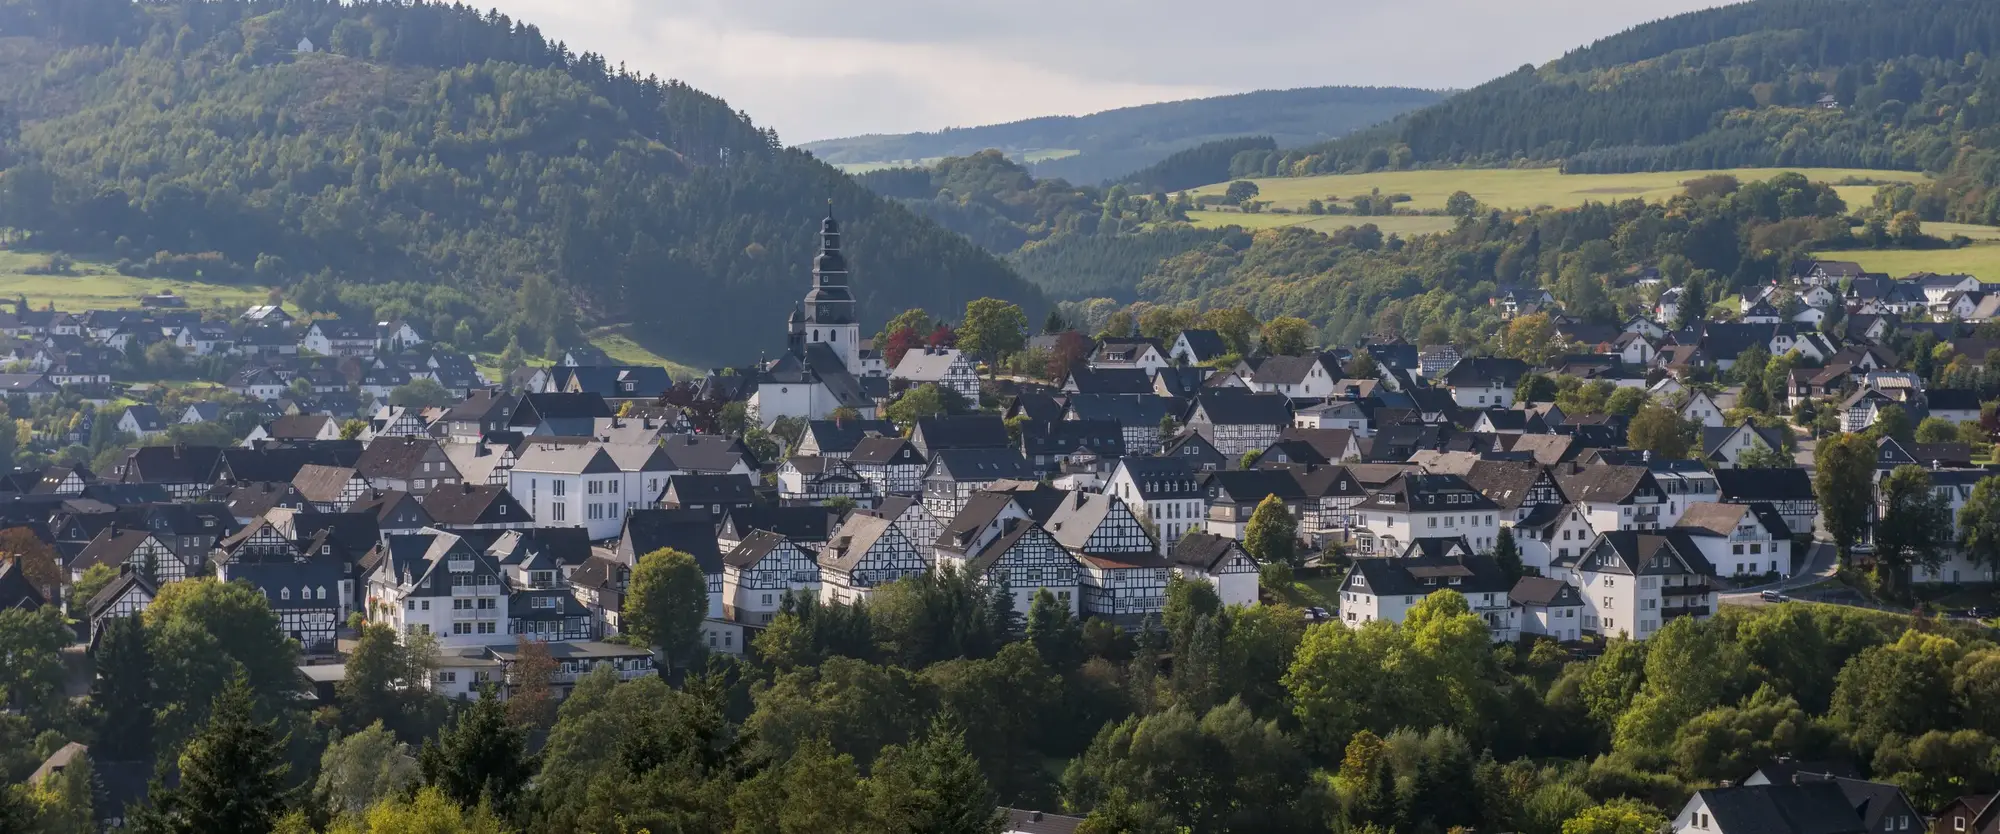 Die Stadt Hallenberg inmitten von Bergen, Wiesen und Wäldern.